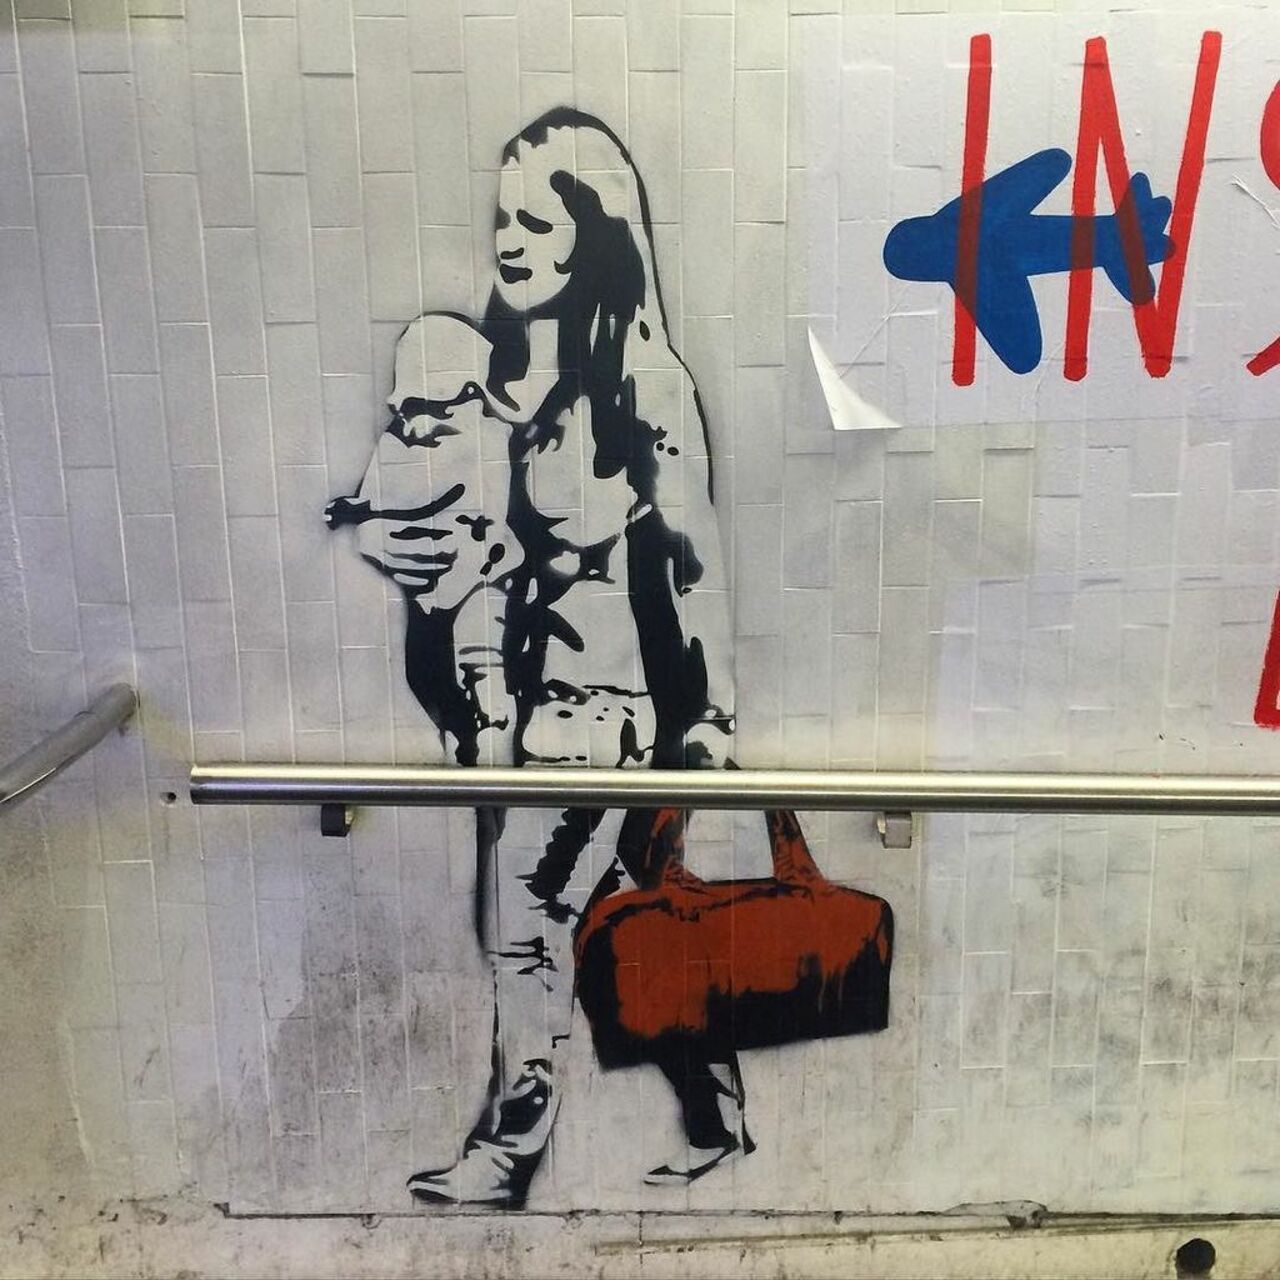 #streetart #garedunord #streetartparis #parisstreetart #graffiti #urbanart #voyageur by benapix https://t.co/5t7YaooP8Y